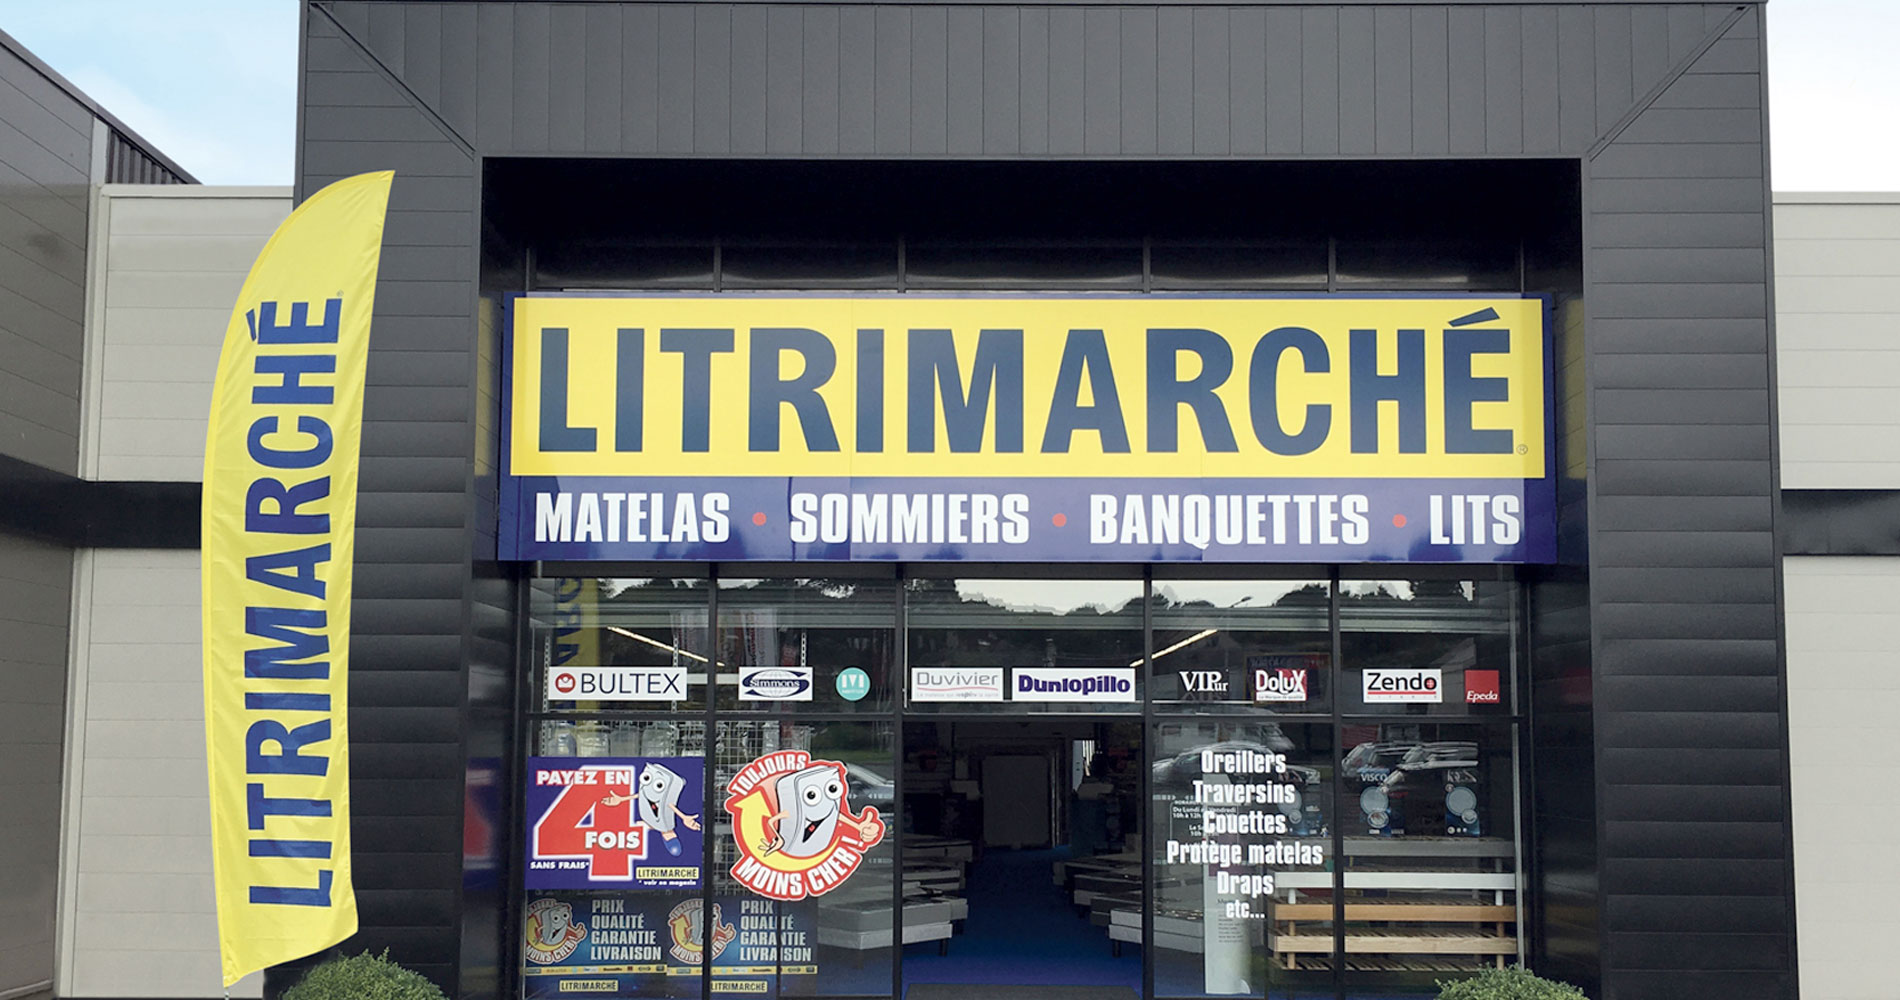 voir les magasins Litrimarch en France